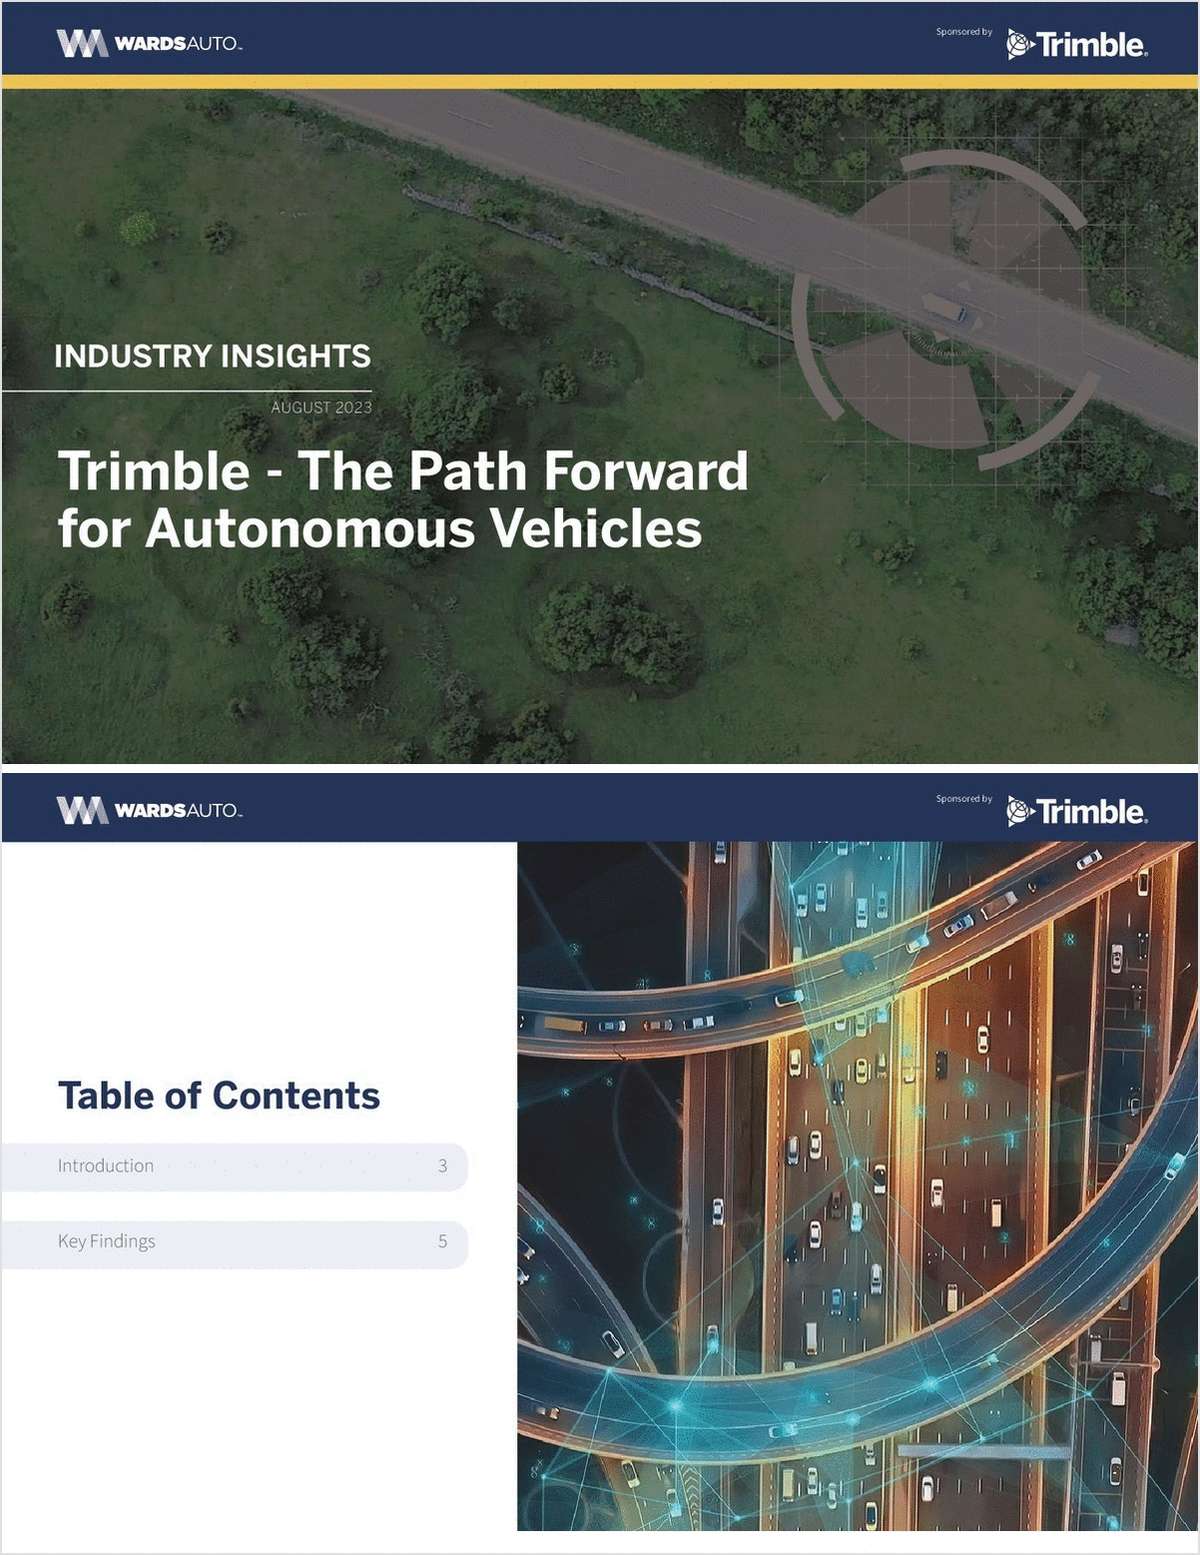 Trimble - The Path Forward for Autonomous Vehicles